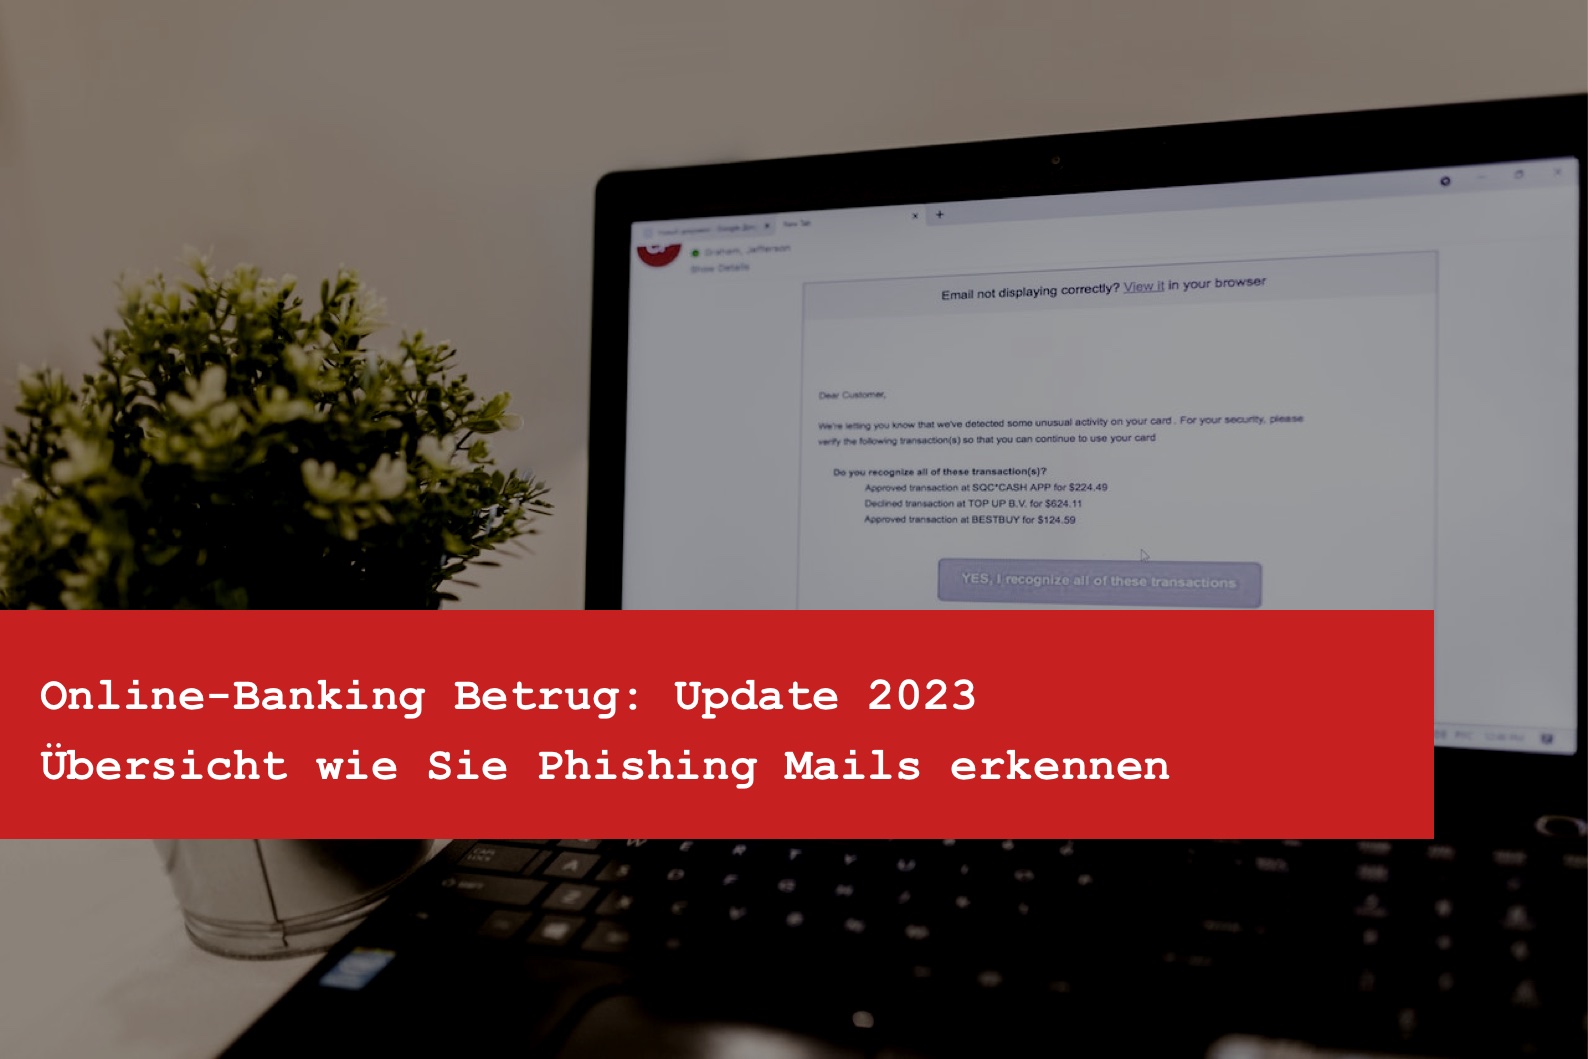 Online-Banking Betrug - Übersicht wie Sie Phishing Mails erkennen - Update 2023